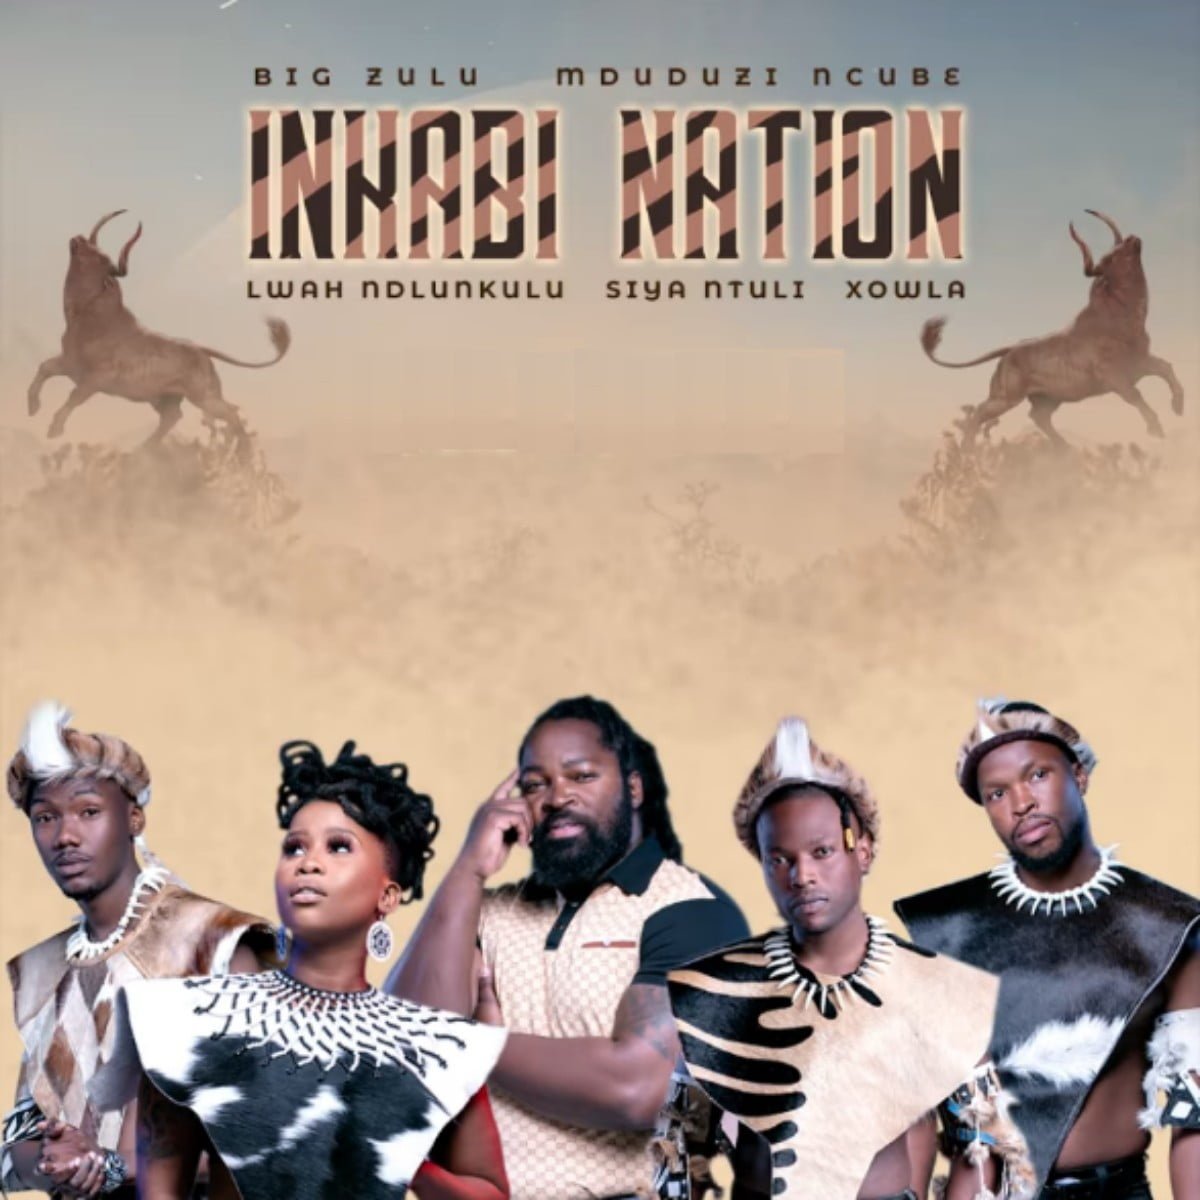 Xowla – Okwamazolo ft. Siya Ntuli, Mduduzi Ncube, L.A Beatz mp3 download free lyrics